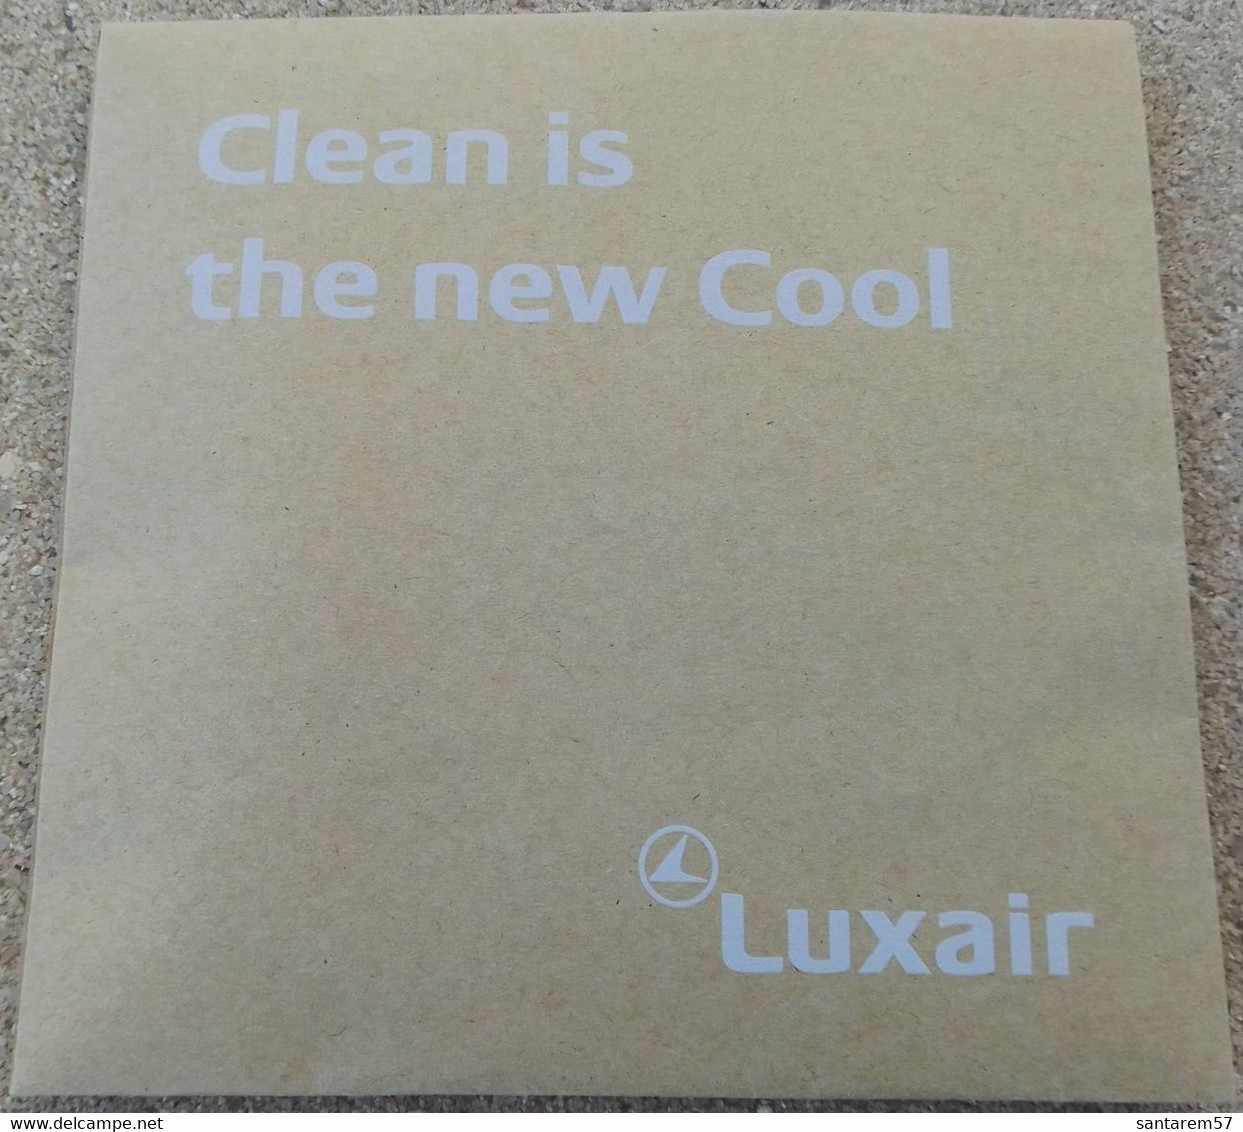 Luxair Pochette Traveller Kit Hygiène Clean Is The New Cool - Pubblicità